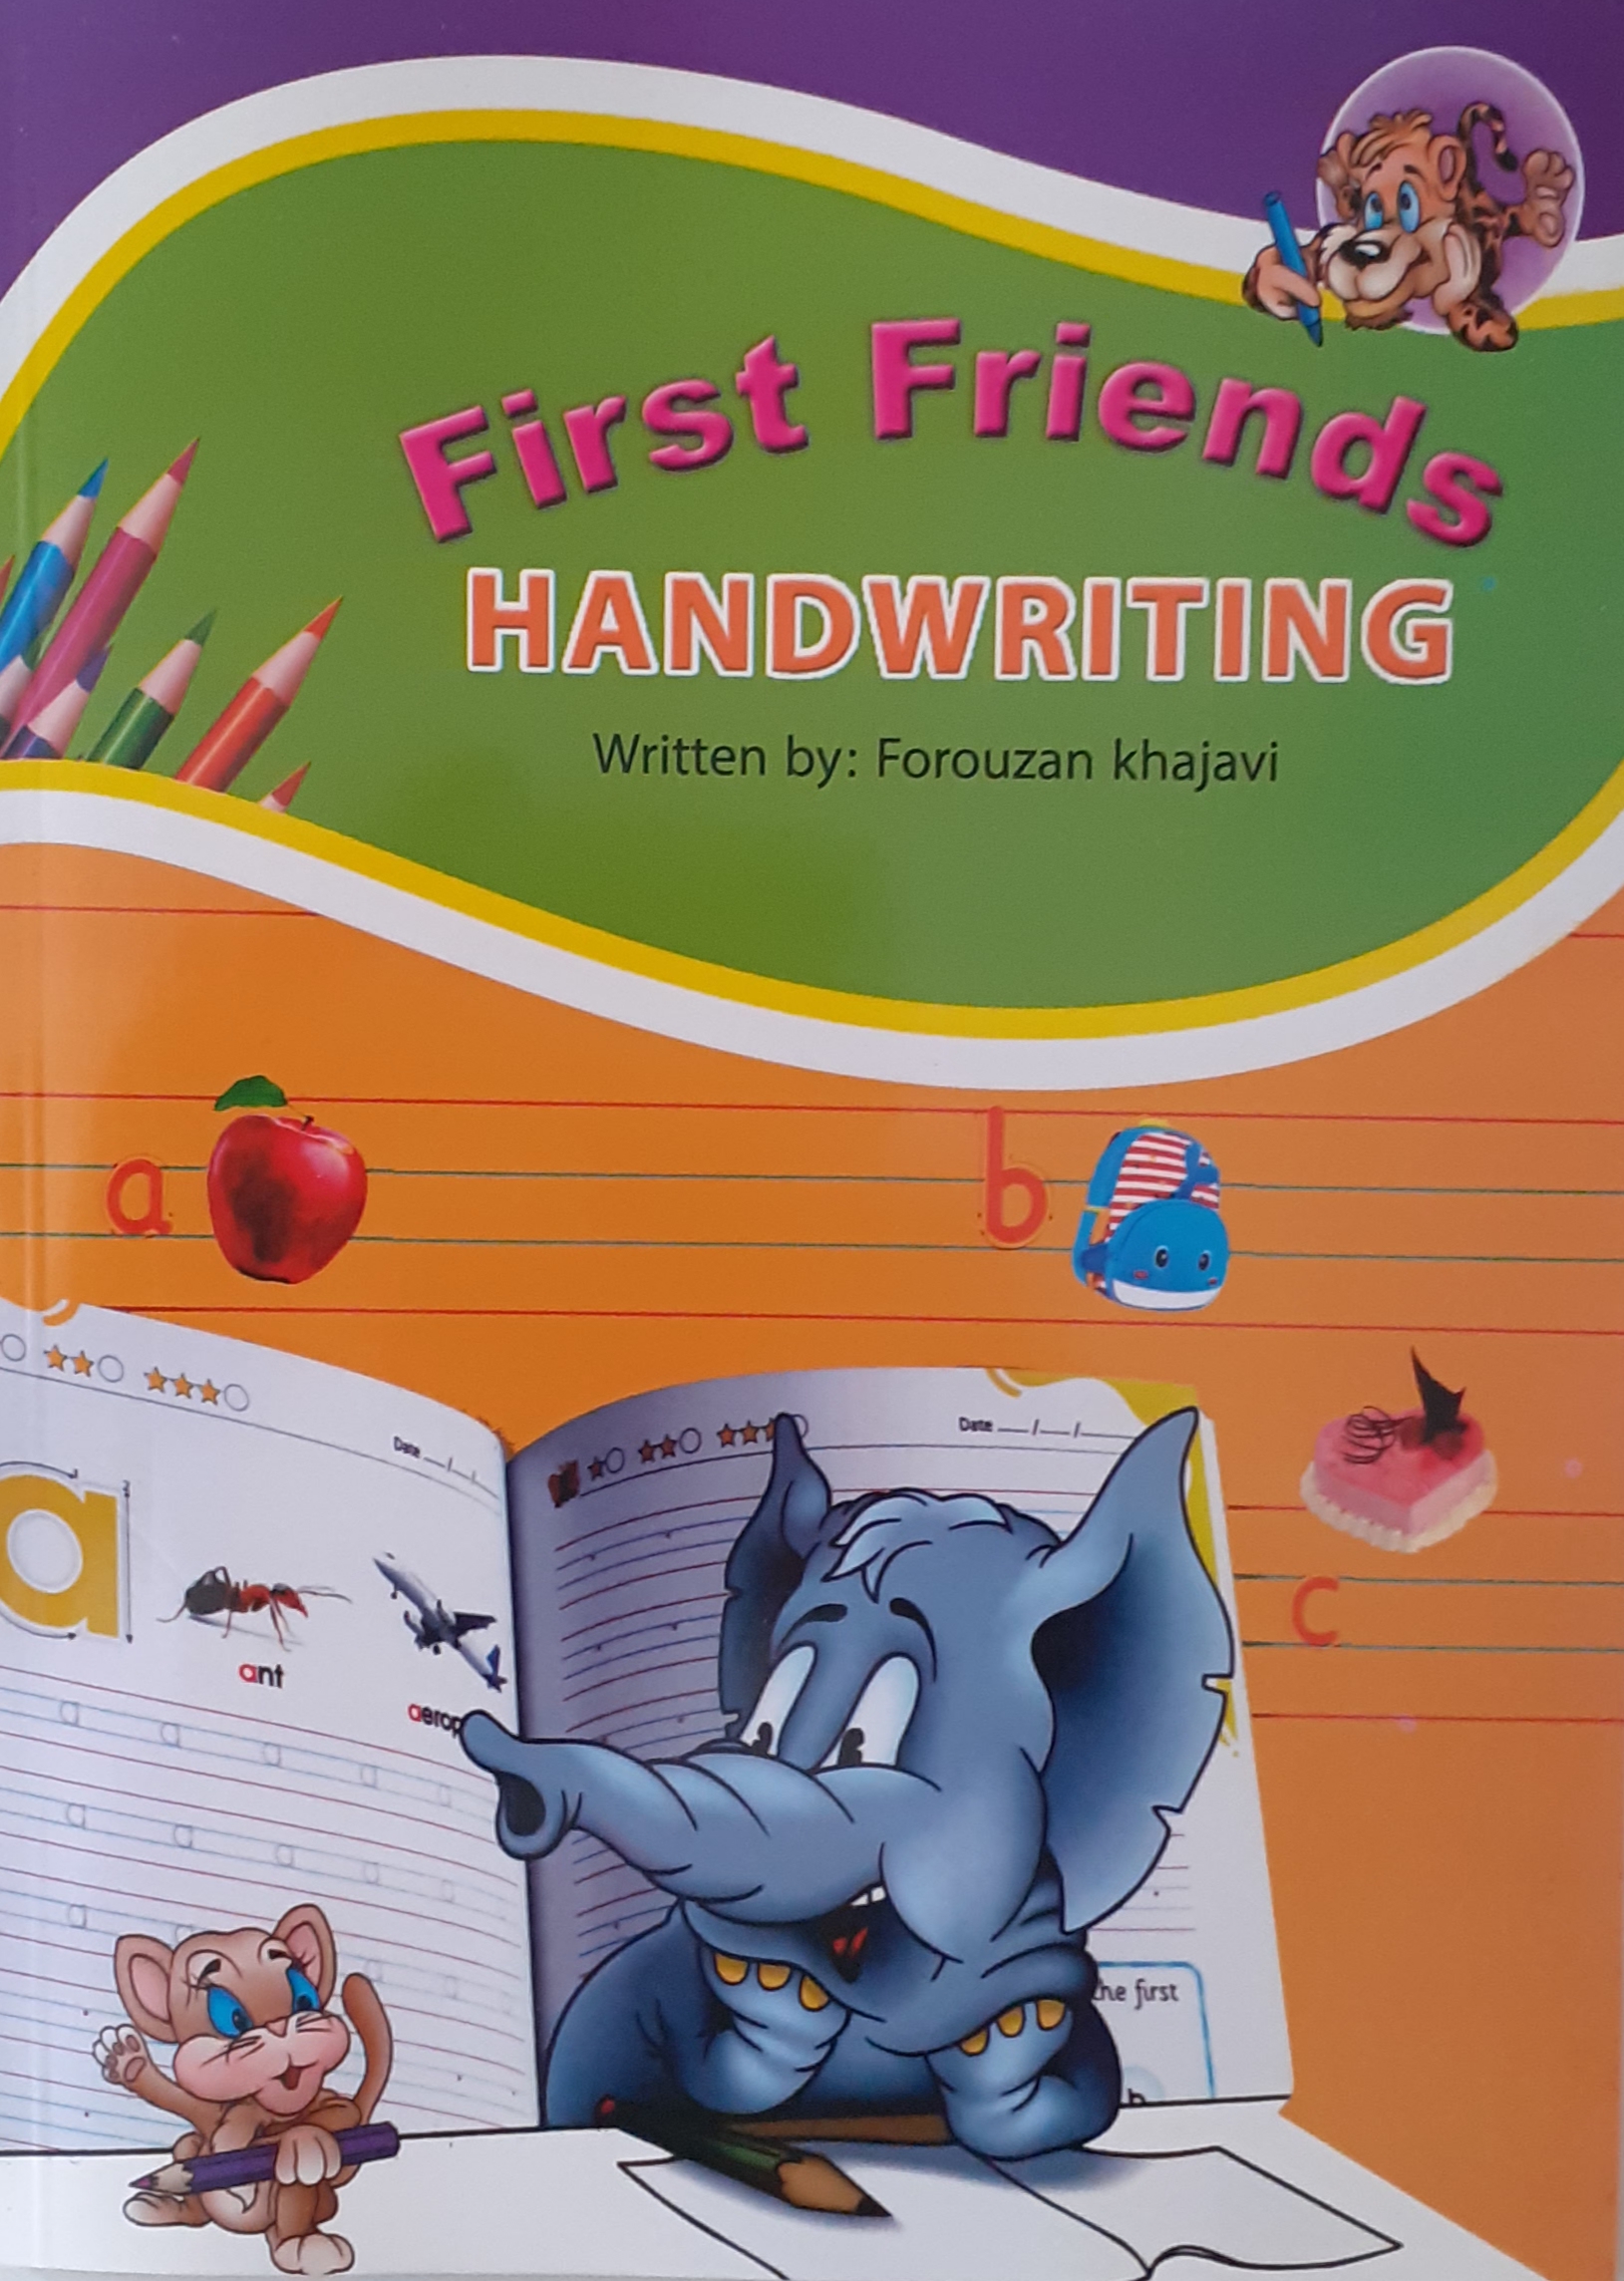 کتاب هندرایتینگ فرست فرندز handwriting first friends